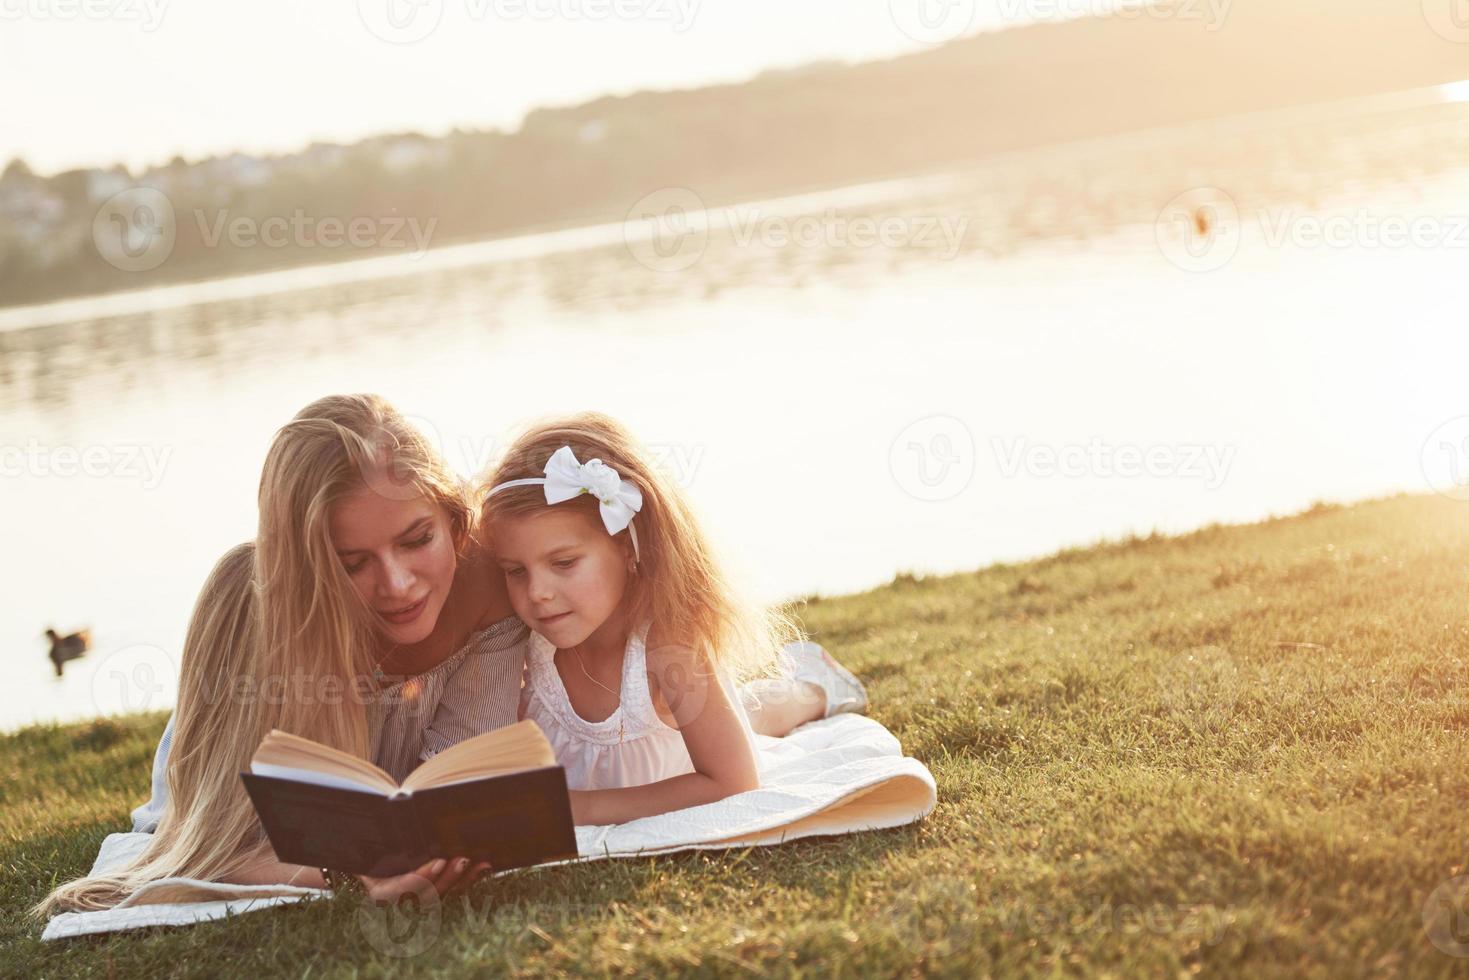 mãe com uma criança lendo um livro na grama foto